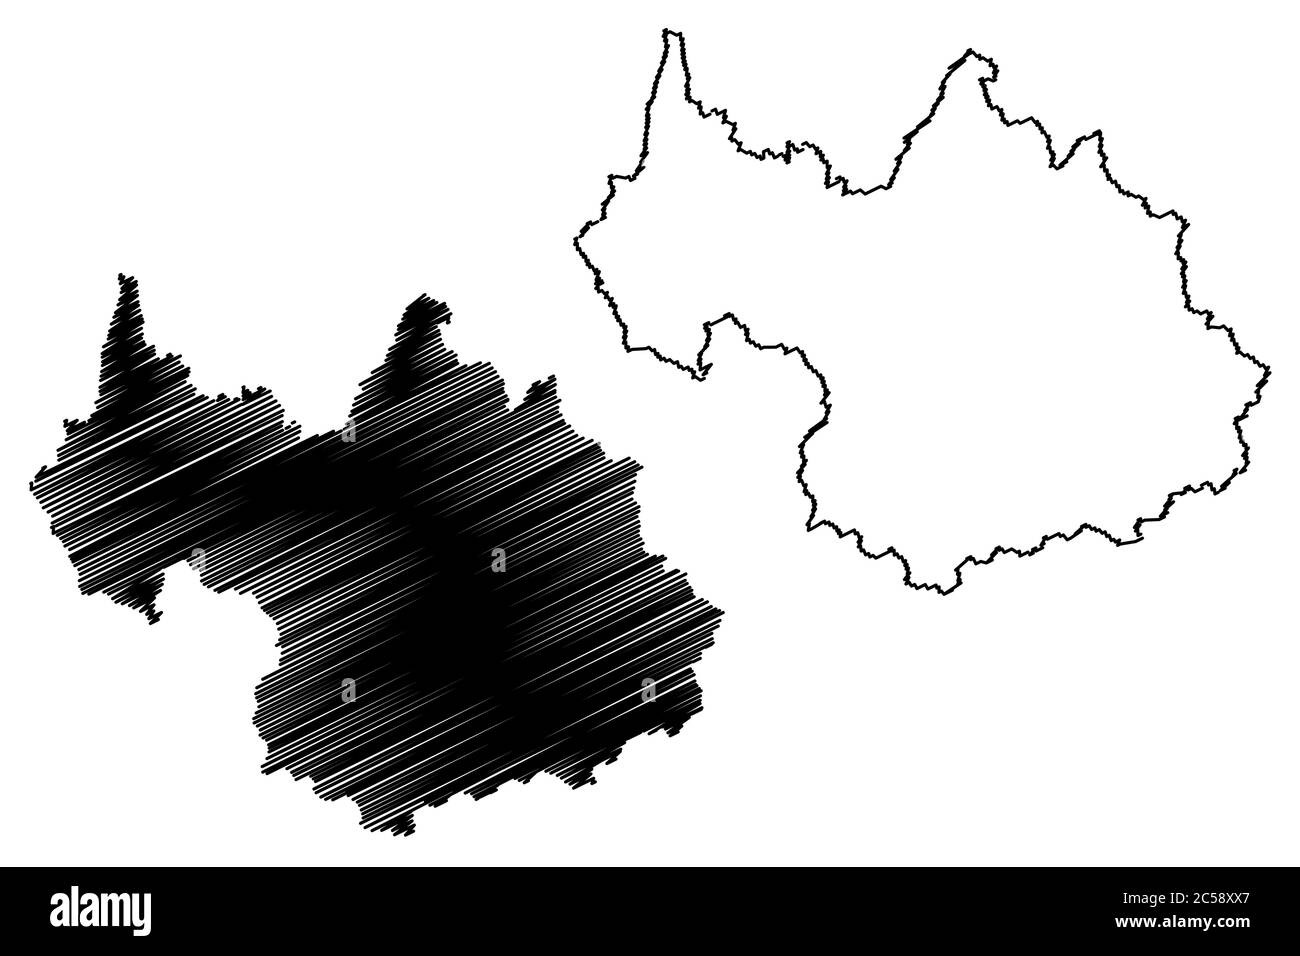 Département Savoie (Frankreich, Frankreich, Republik Frankreich, Region Auvergne-Rhone-Alpes, ARA) Karte Vektorgrafik, Skizze Savoie Karte Stock Vektor